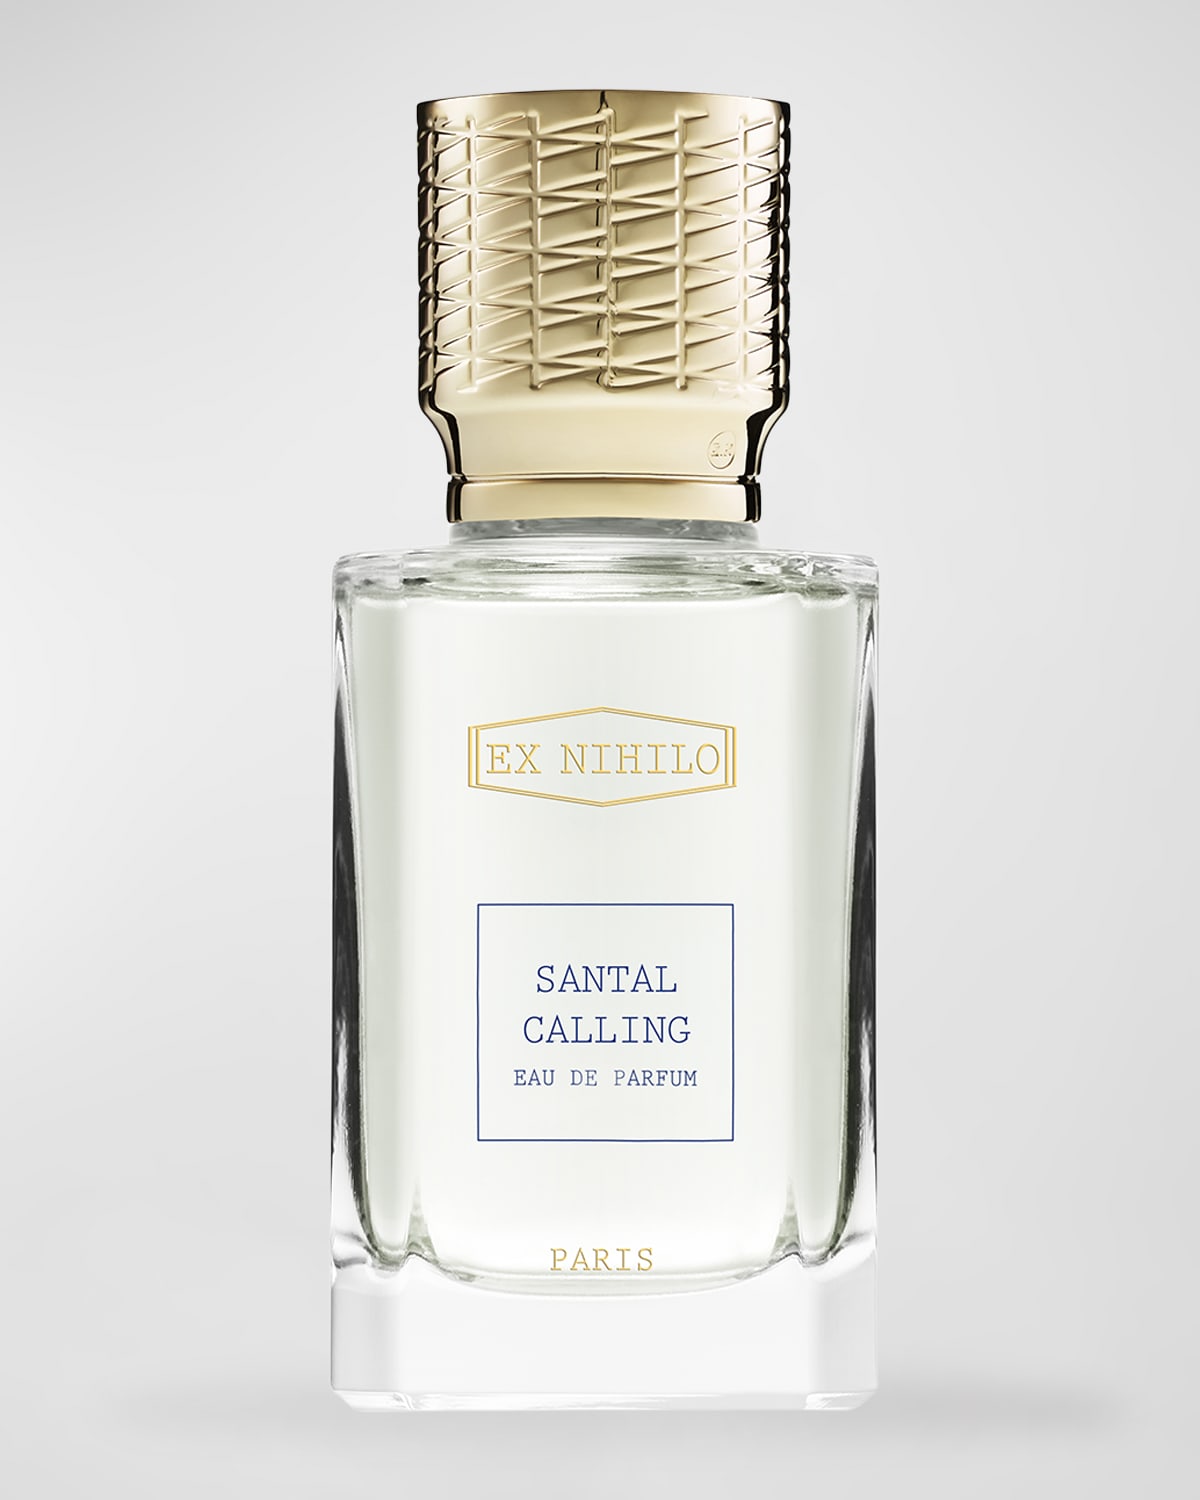 Ex Nihilo Santal Calling Eau de Parfum, 1.7 oz.